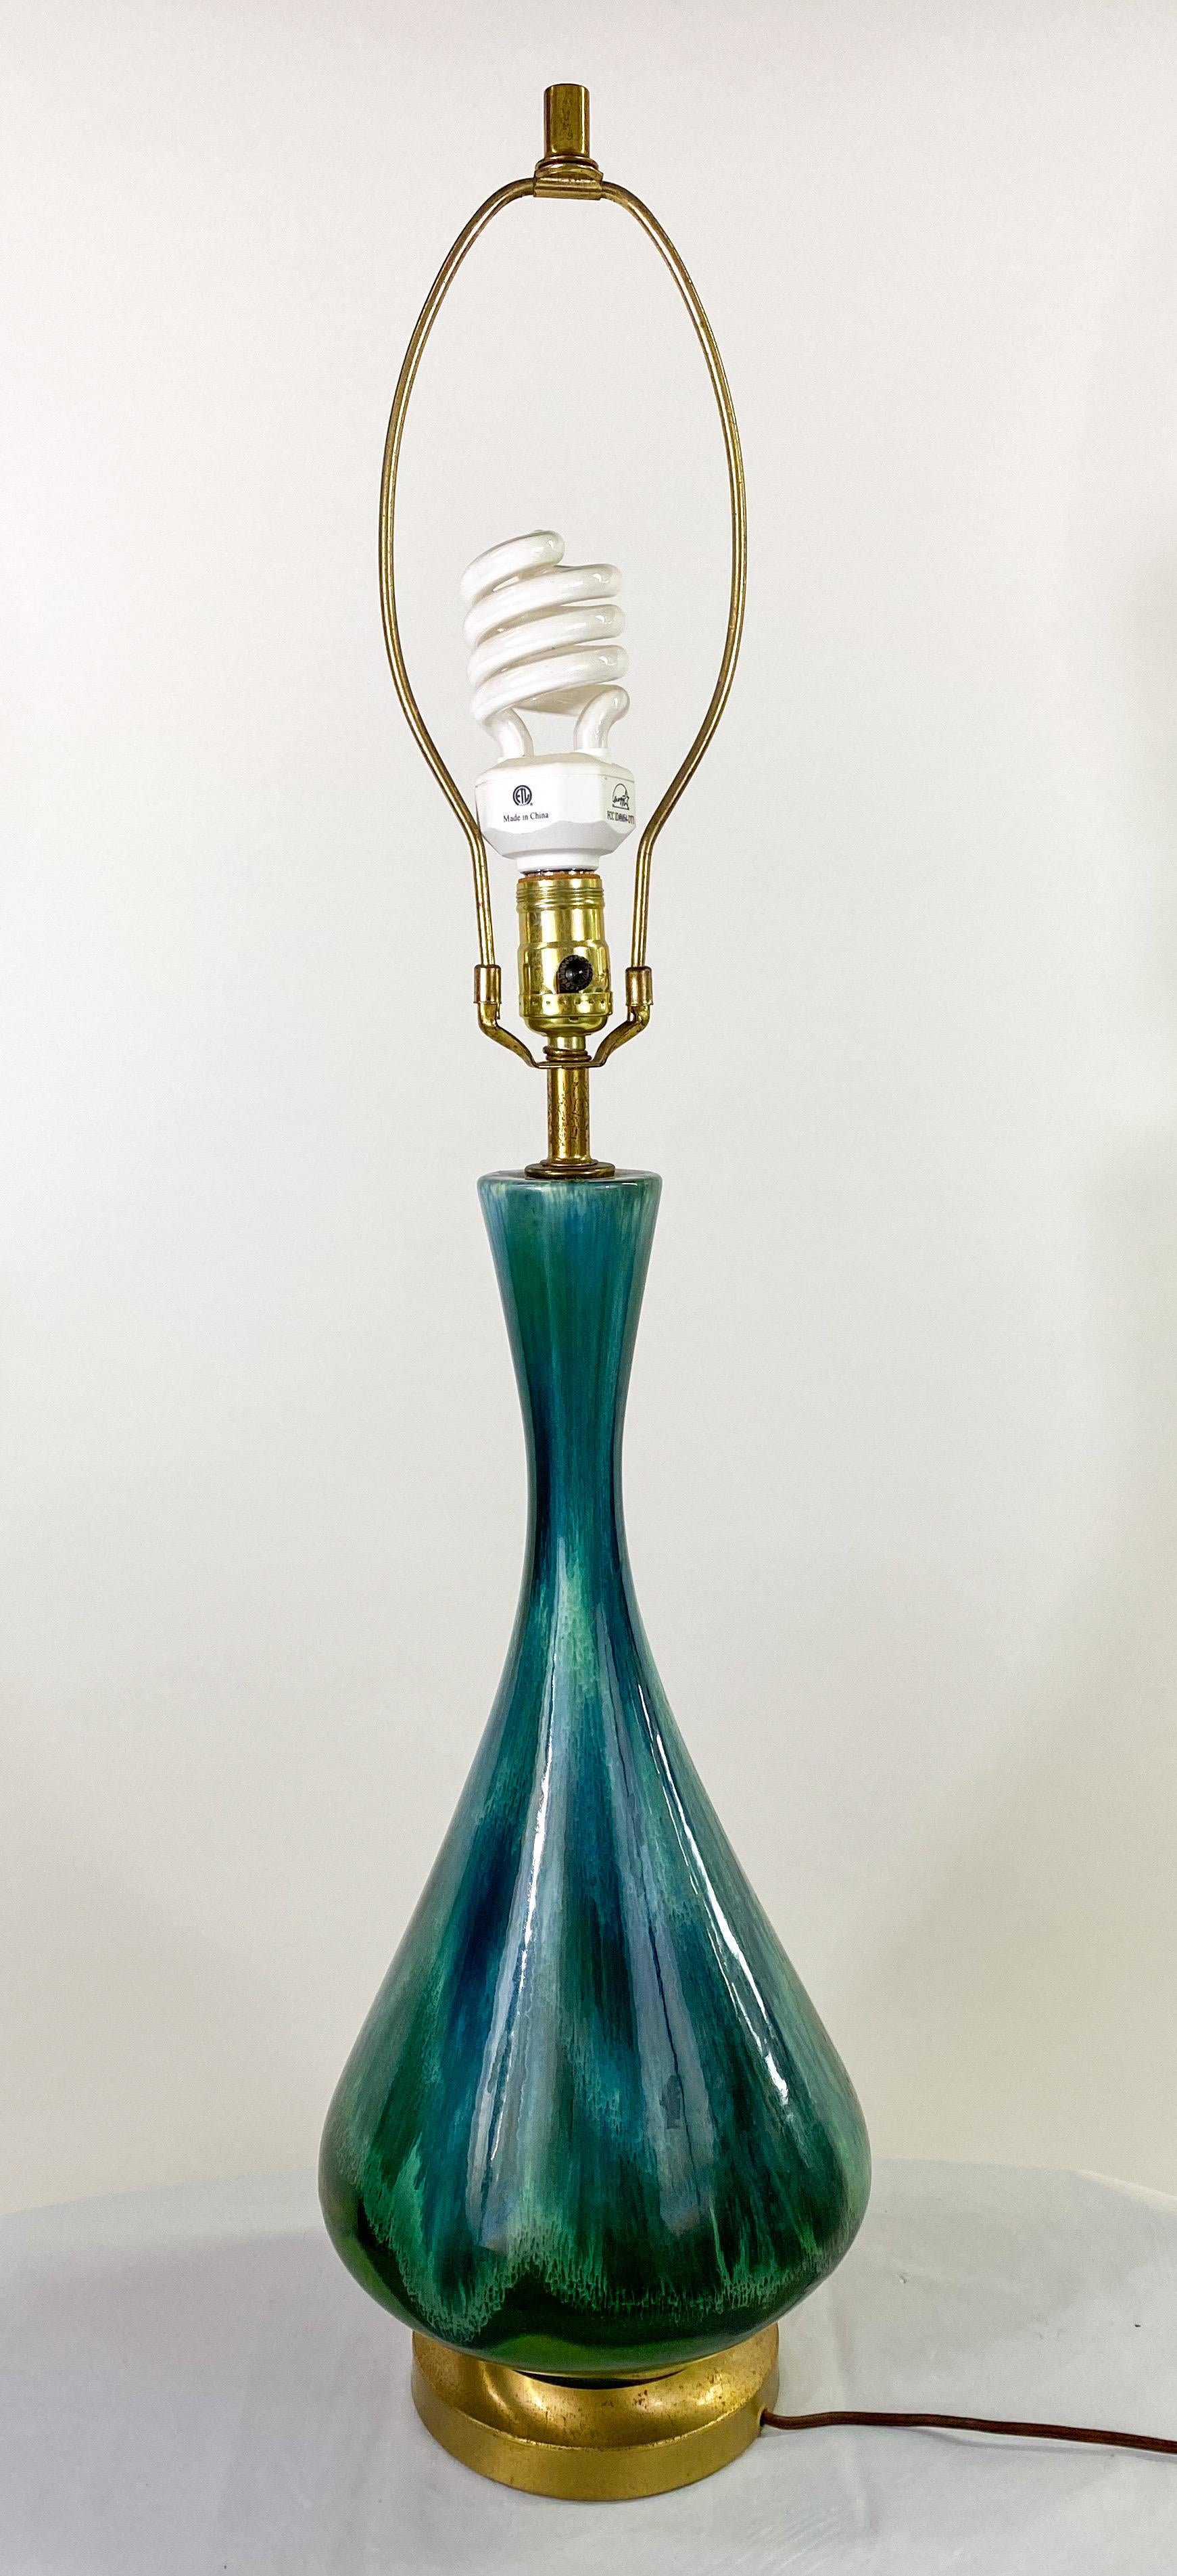 Une exquise lampe de table moderne du milieu du siècle avec un abat-jour original surdimensionné de forme cylindrique blanc cassé. La lampe présente une couleur verte inspirée de la malachite, montrant des motifs et des grains dans le style de cette